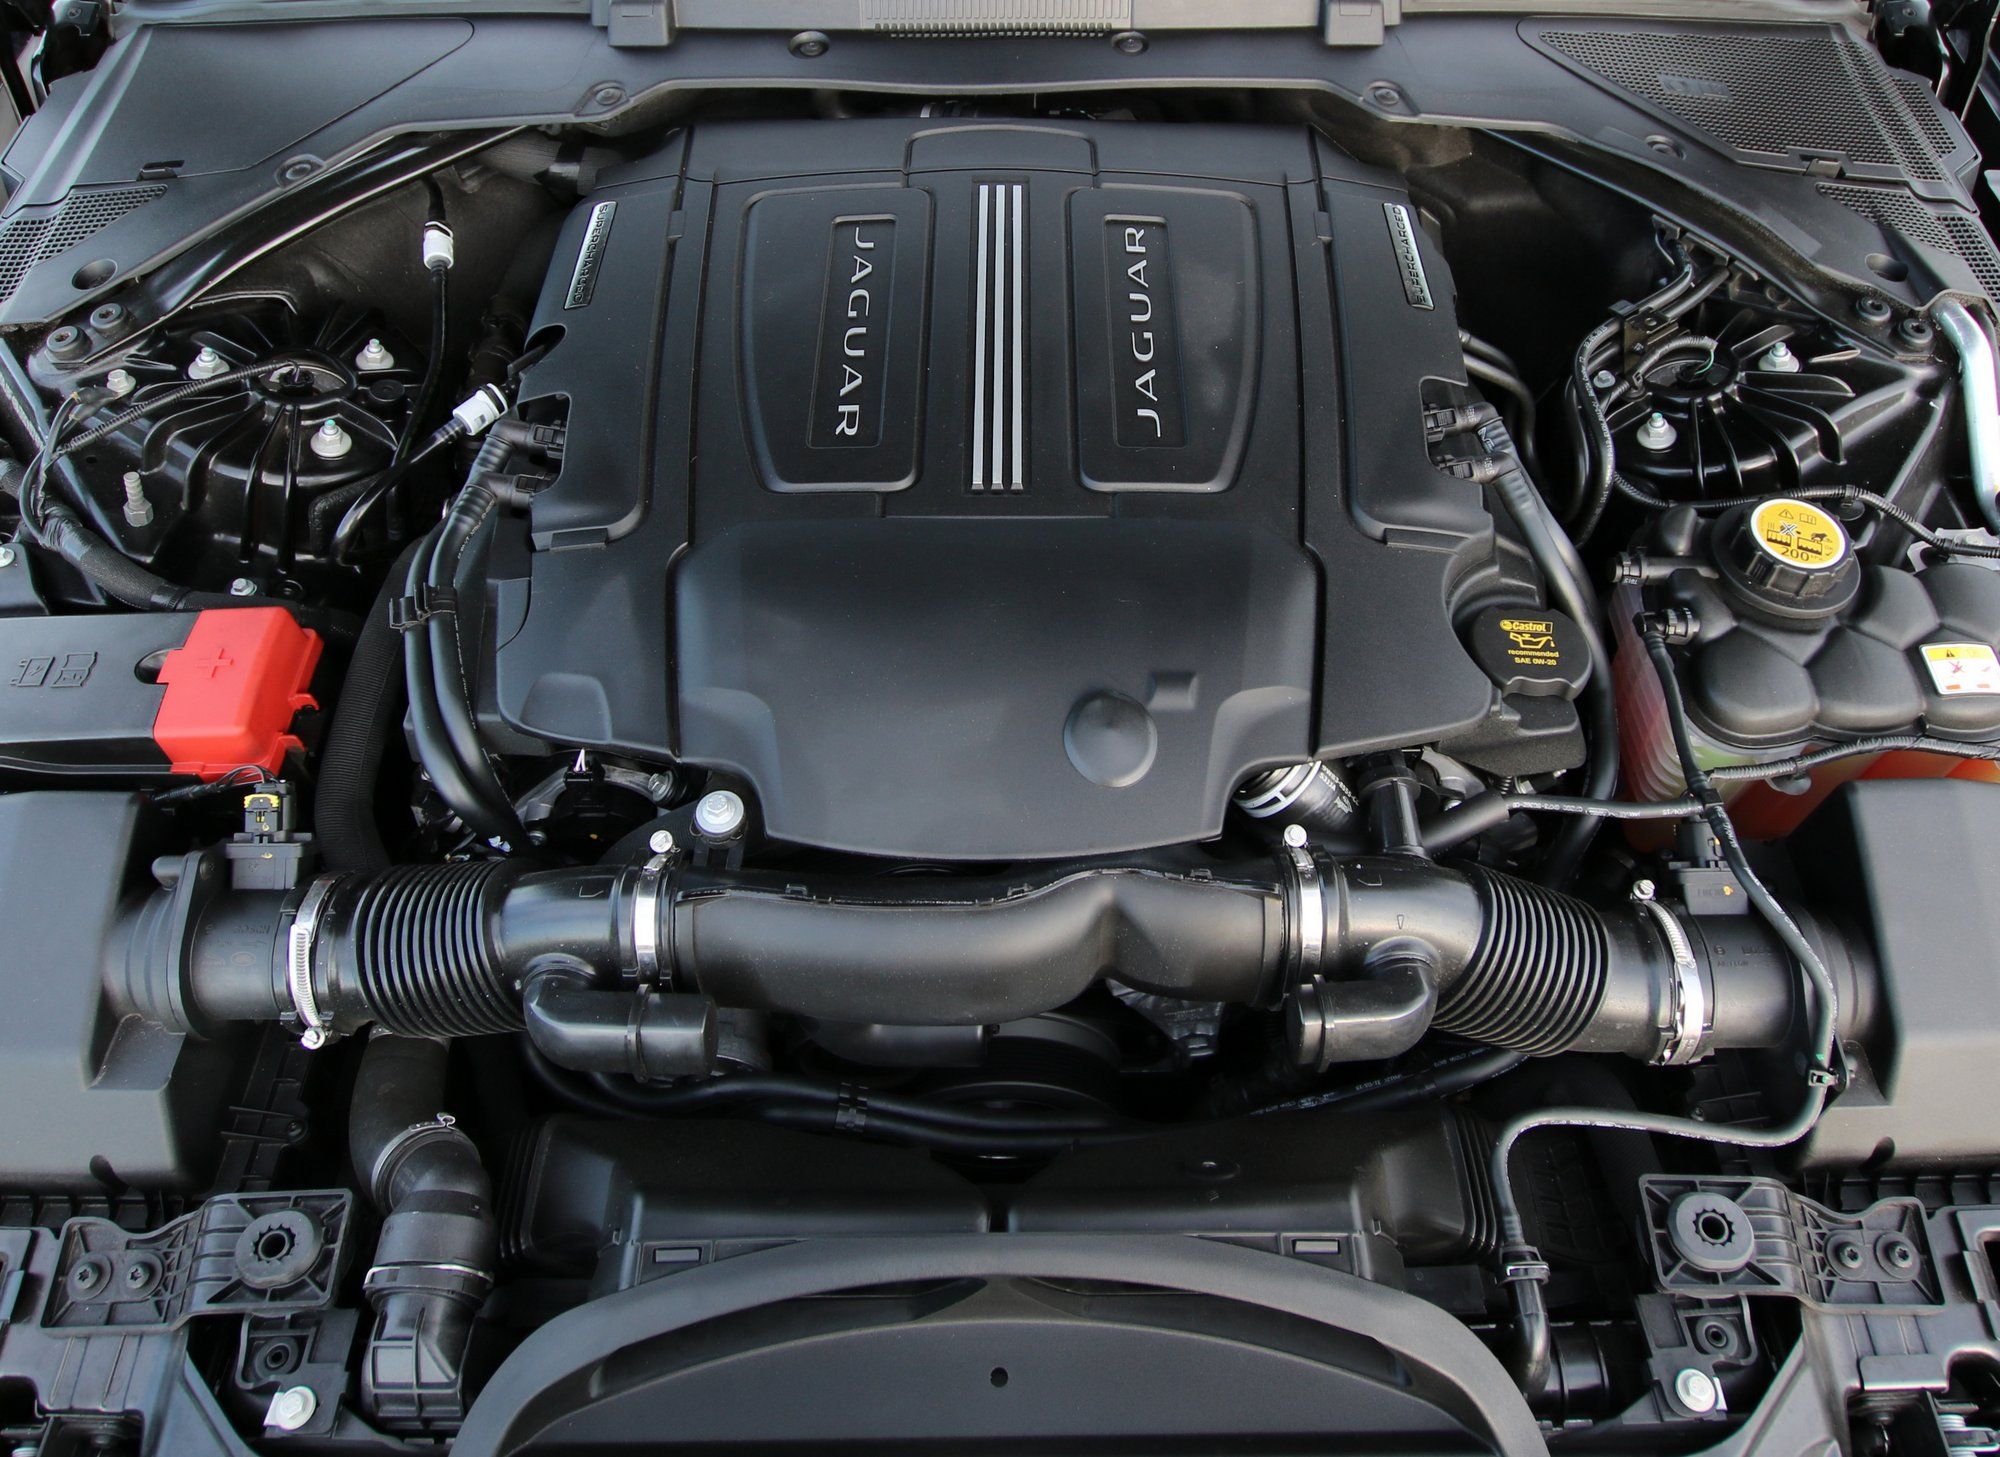 Jaguar AJ126 engine